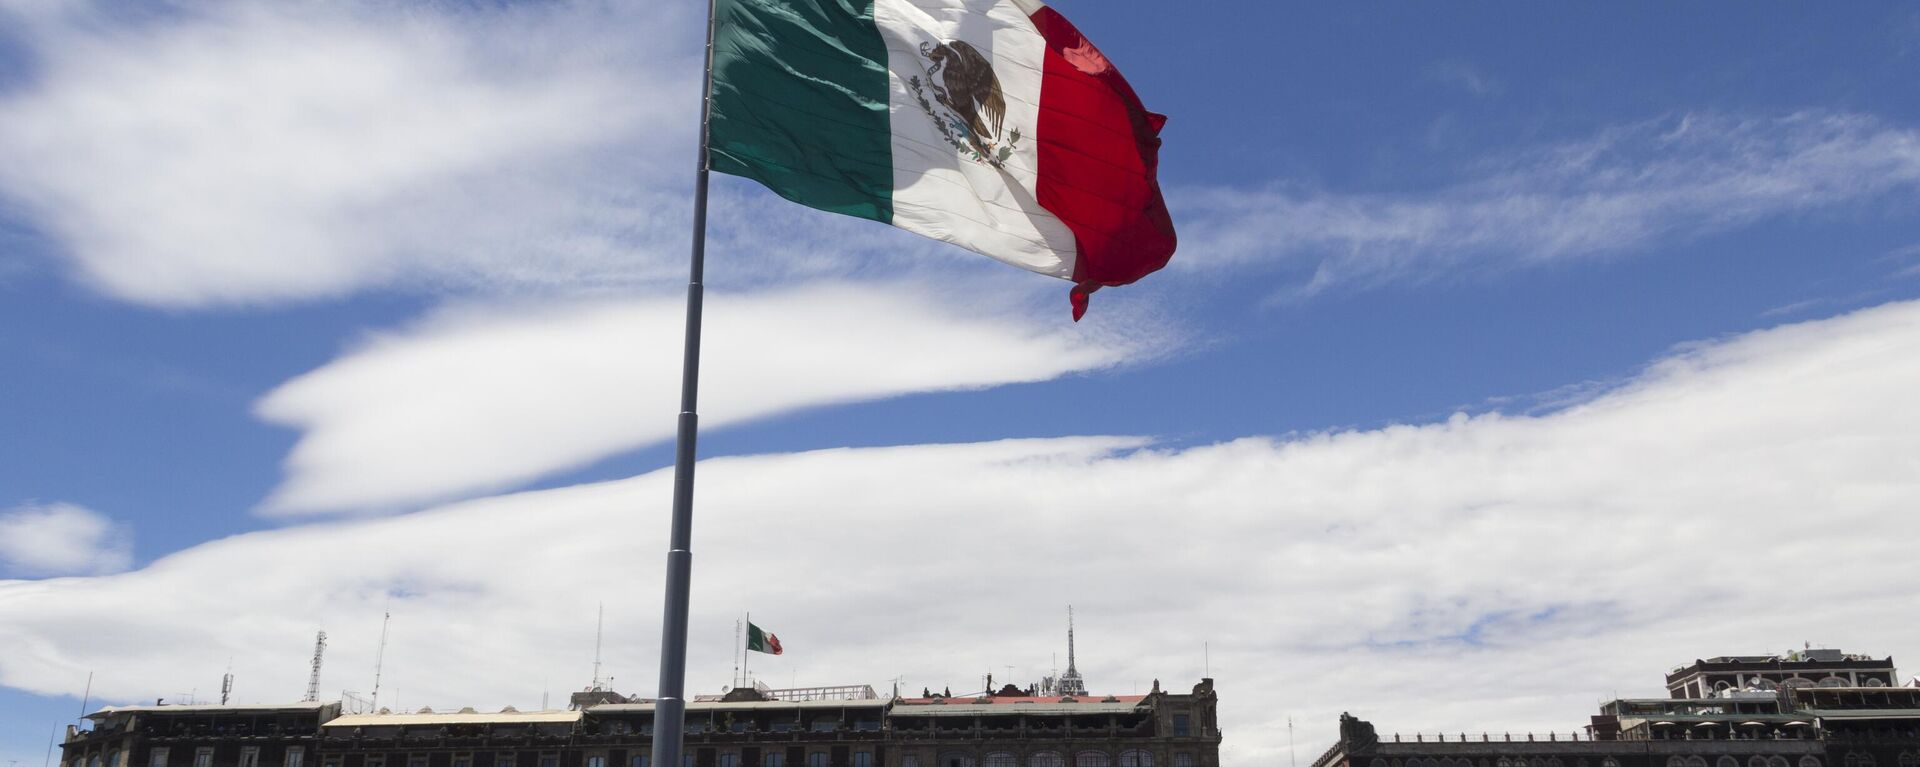 Bandera de los Estados Unidos Mexicanos - Sputnik Mundo, 1920, 28.12.2021